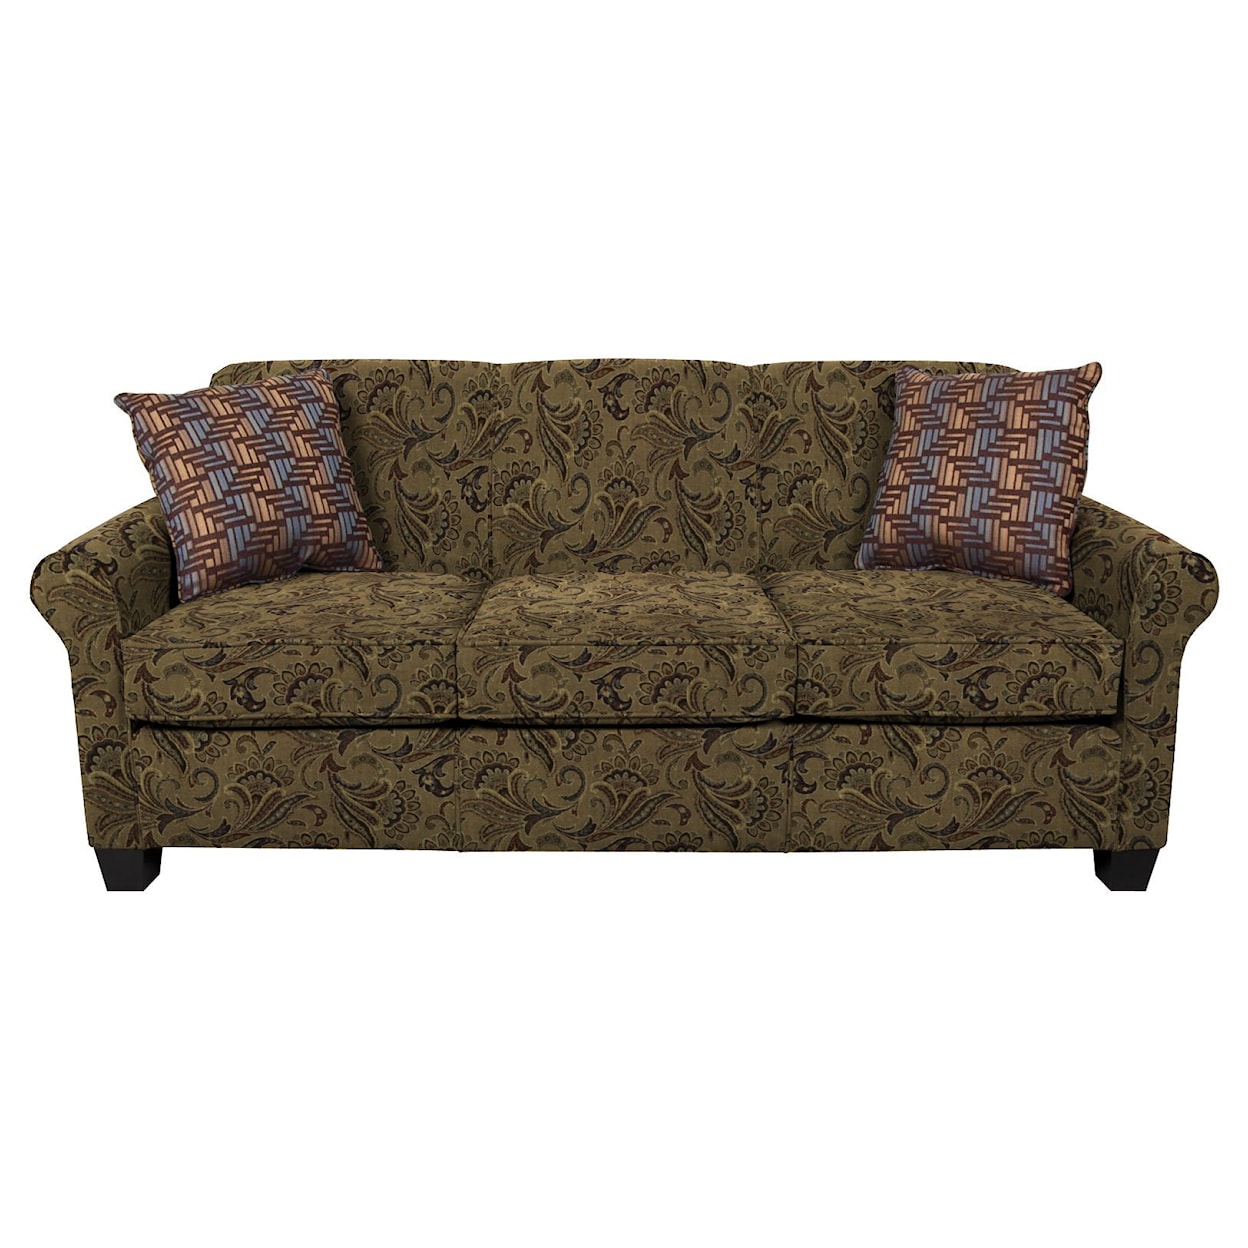 England 4630/LS Series Queen Sleeper Sofa with Comfort 3 Mattress